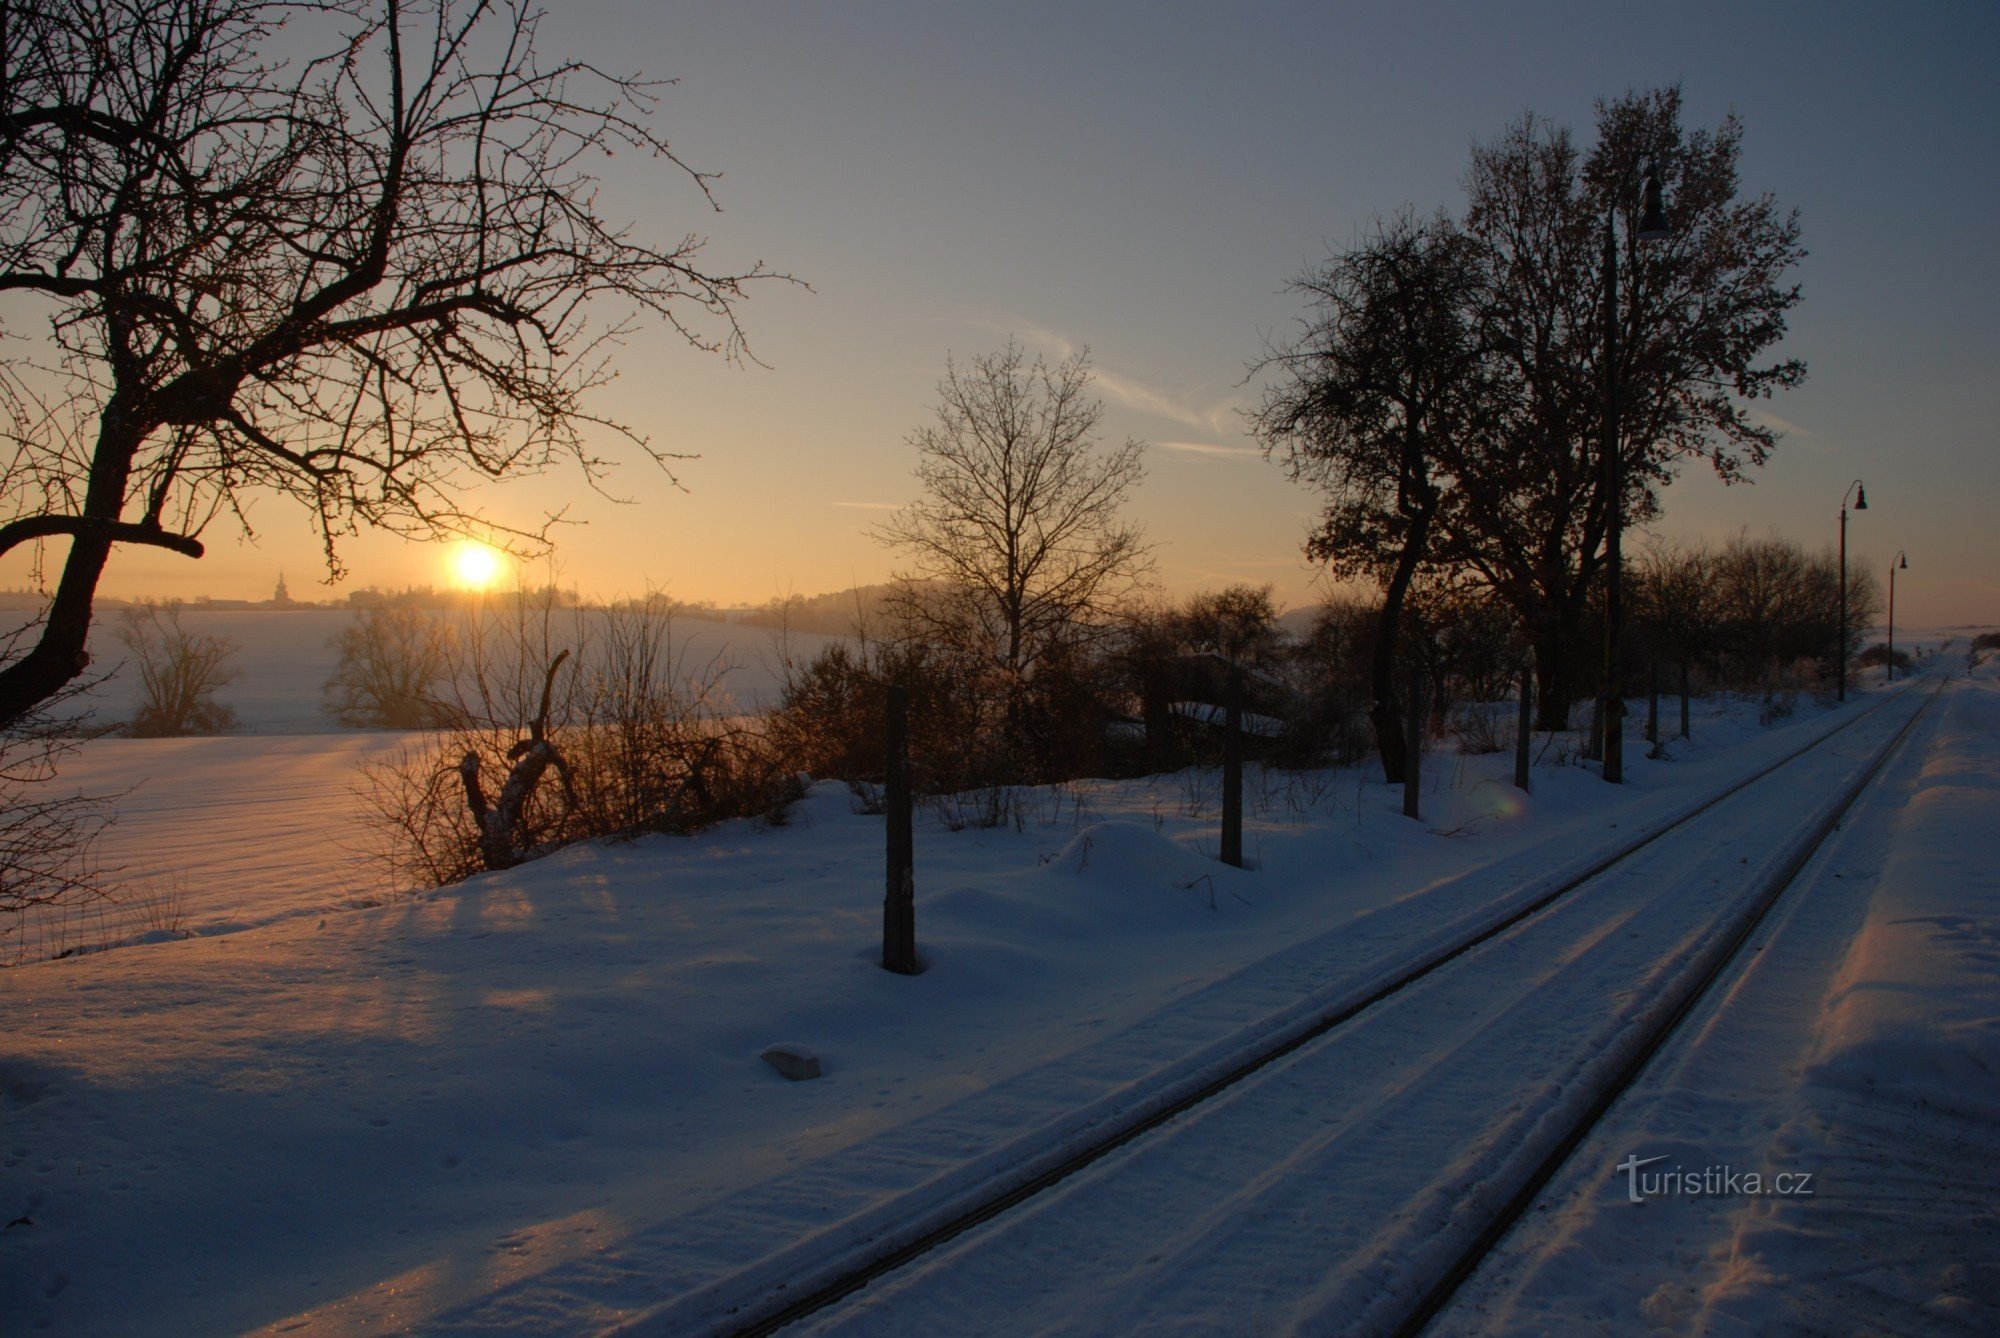 vista de invierno desde la estación de tren hacia Bezdružice